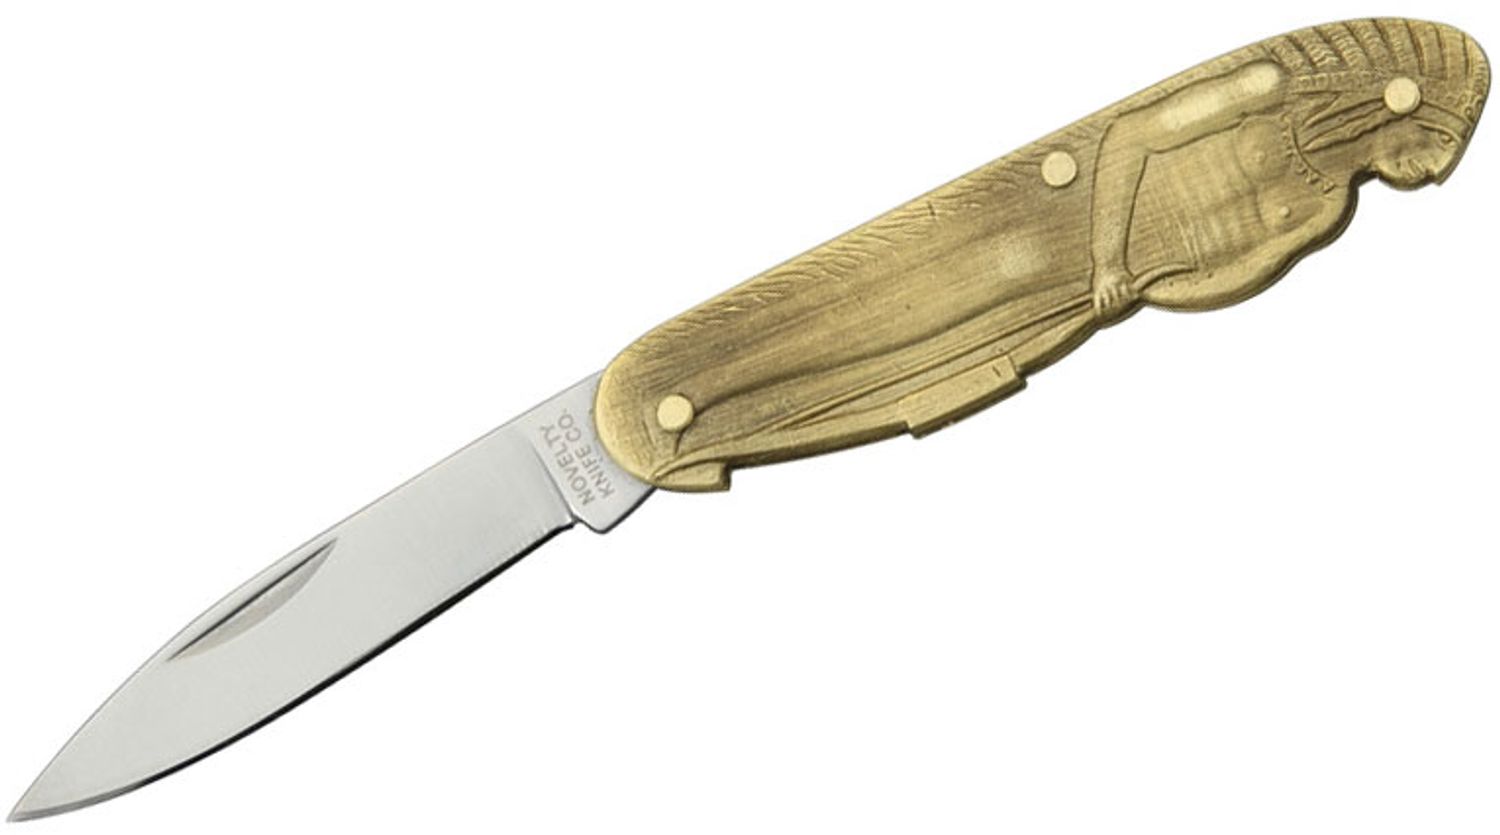 Novelty Knife Company Sculpted Brass Indian Folding Pen Knife 2-3